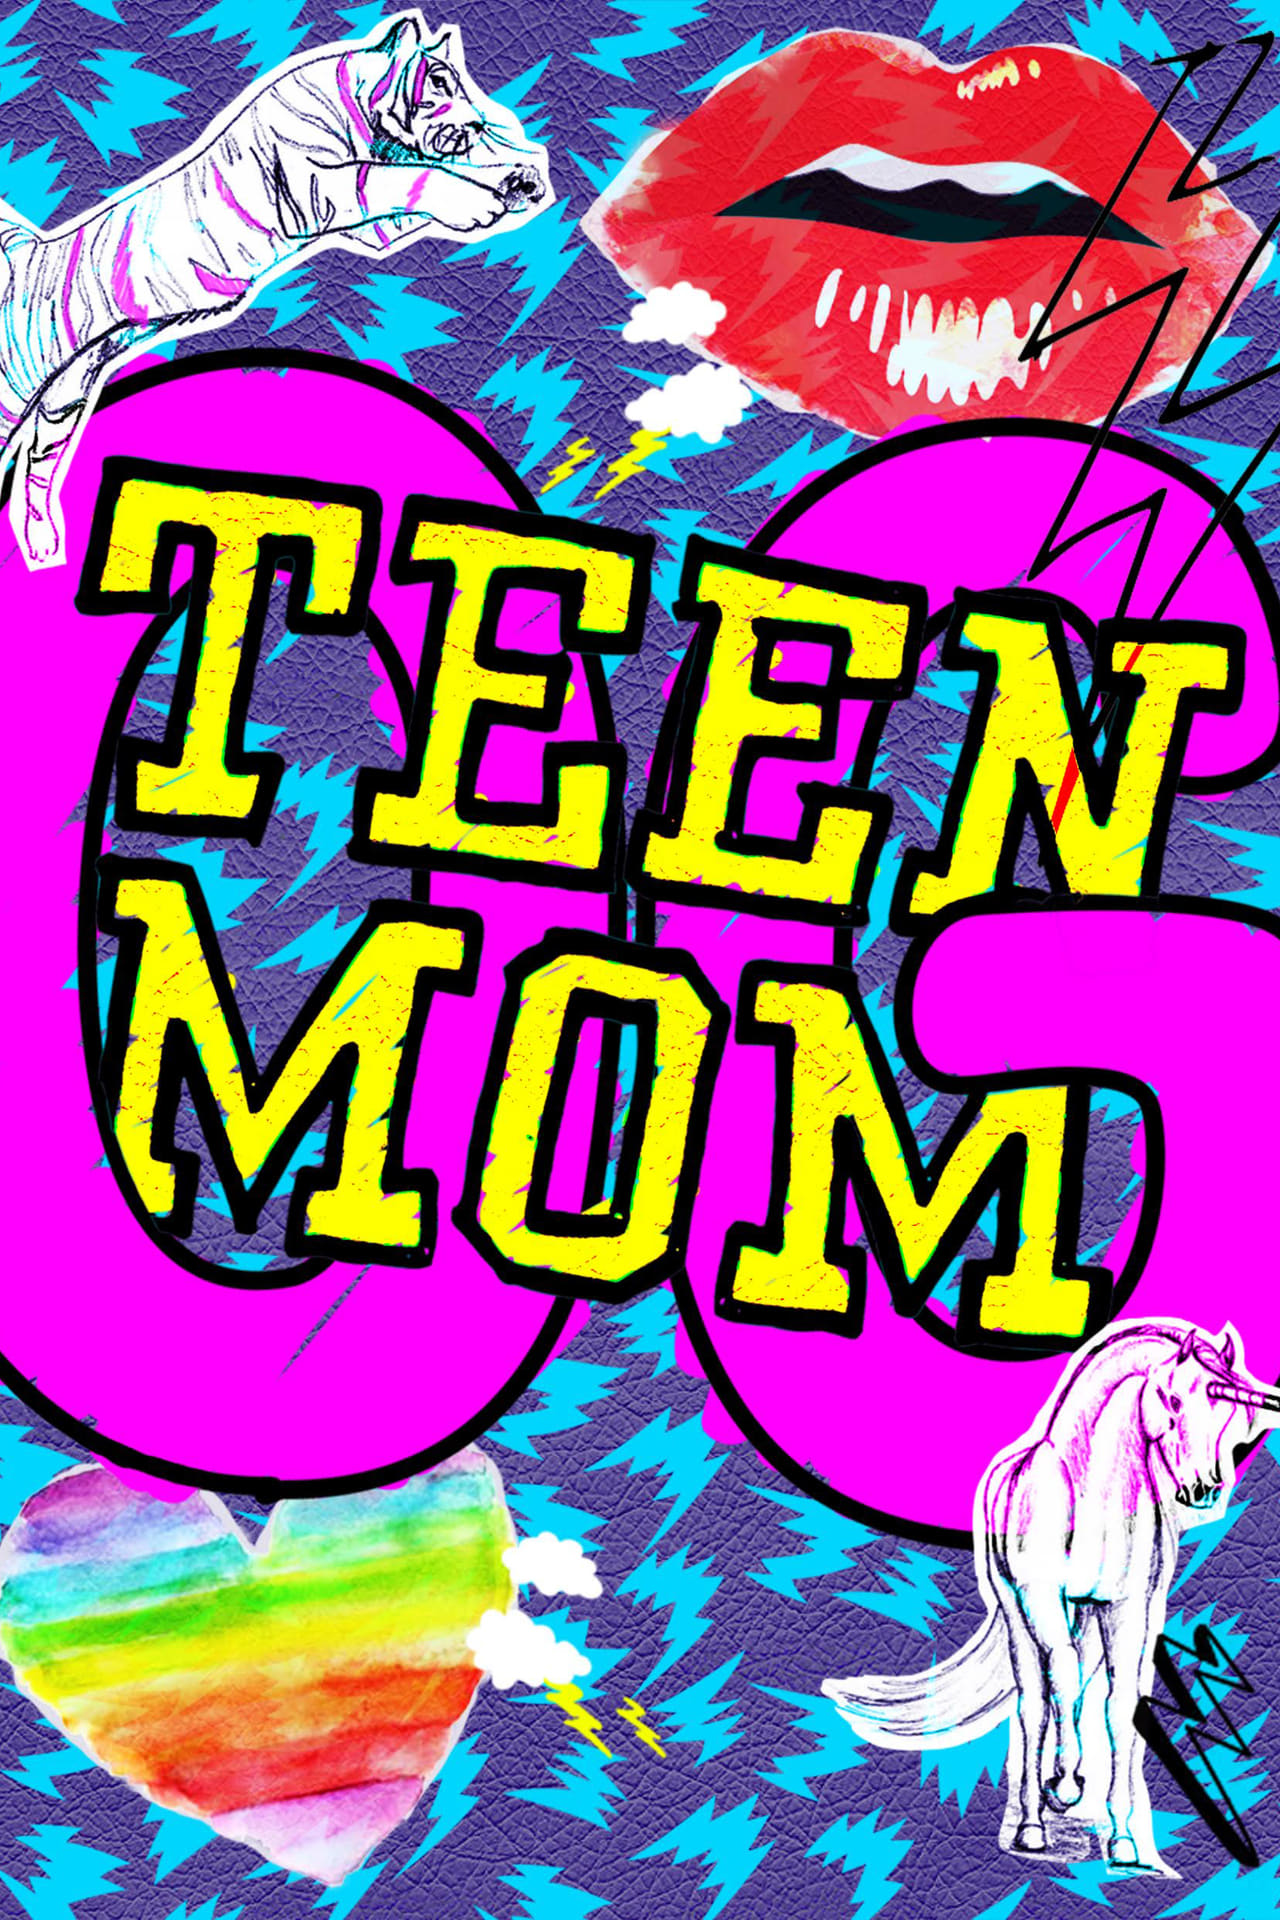 Teen Mom Season 2